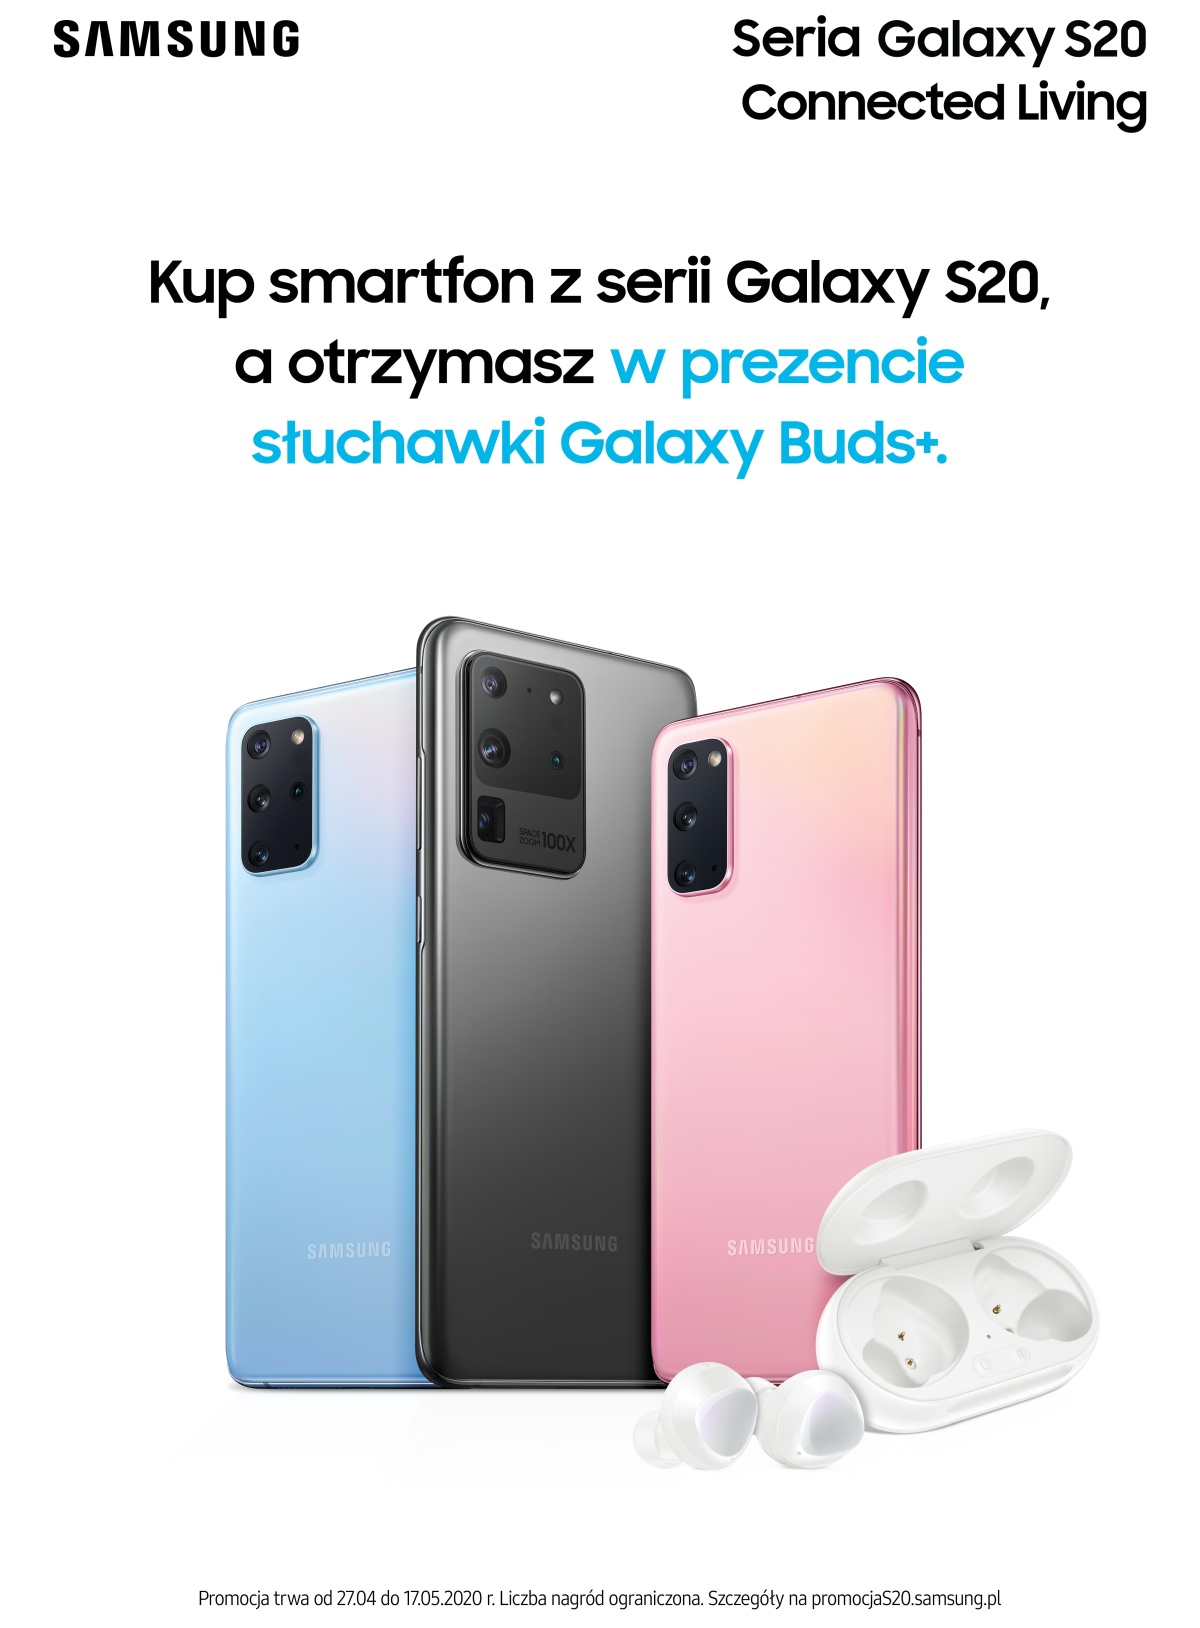 Samsung Galaxy S20 promocja Sluchawki Galaxy Buds+ plakat